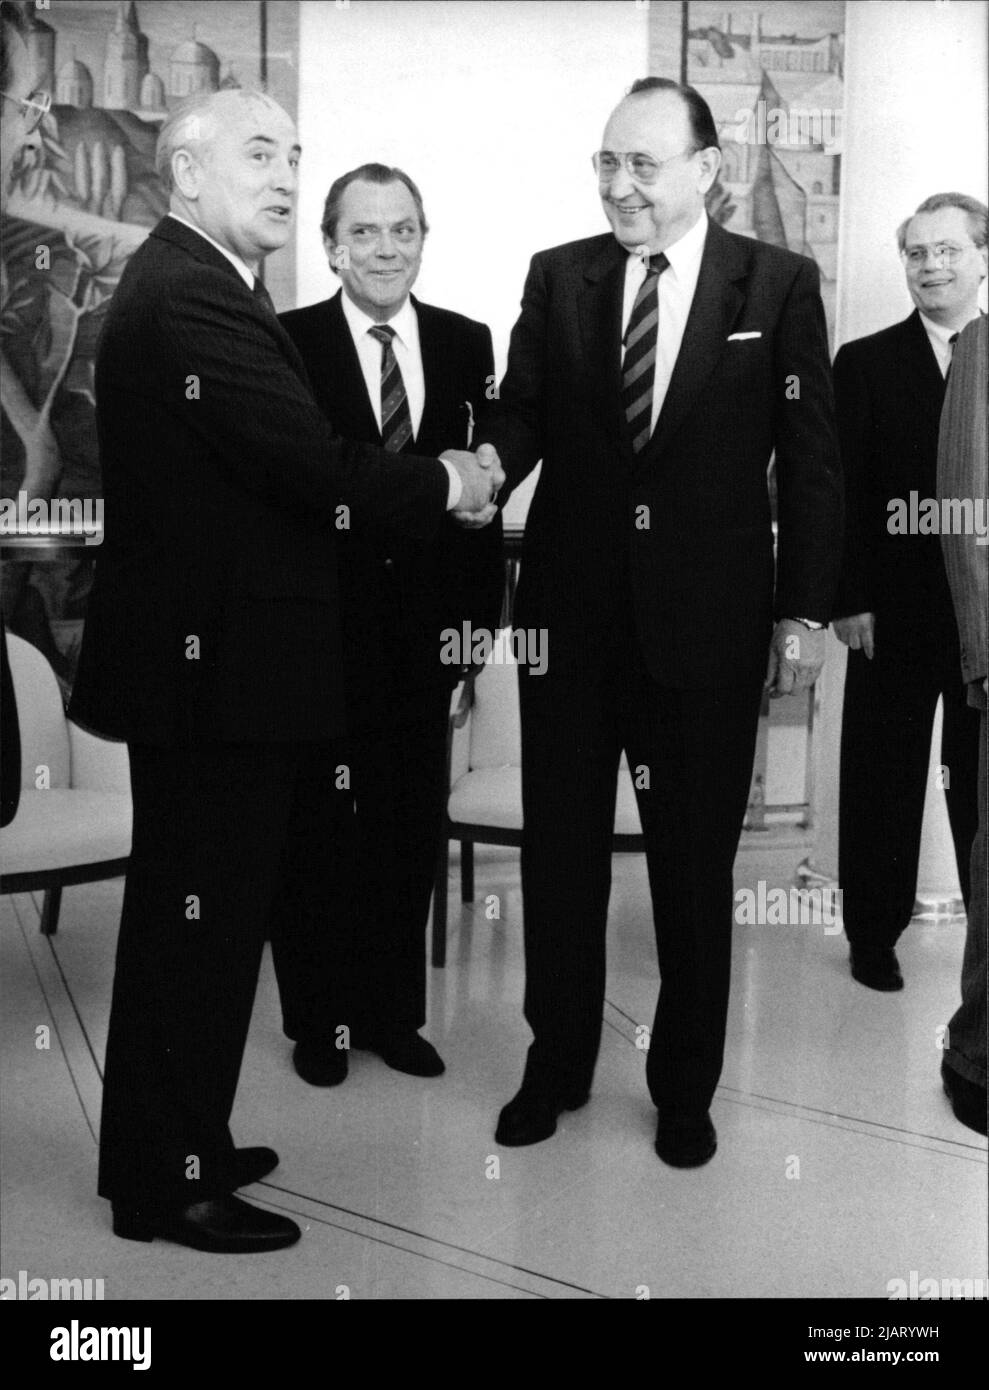 Sowjetischer Präsident Michail Gorbatschow bei seinem Besuch in Bonn: Außenminister Hans-Dietrich Genscher begrüßt ihn im Gästehaus am Venusberg, 1989. Stock Photo